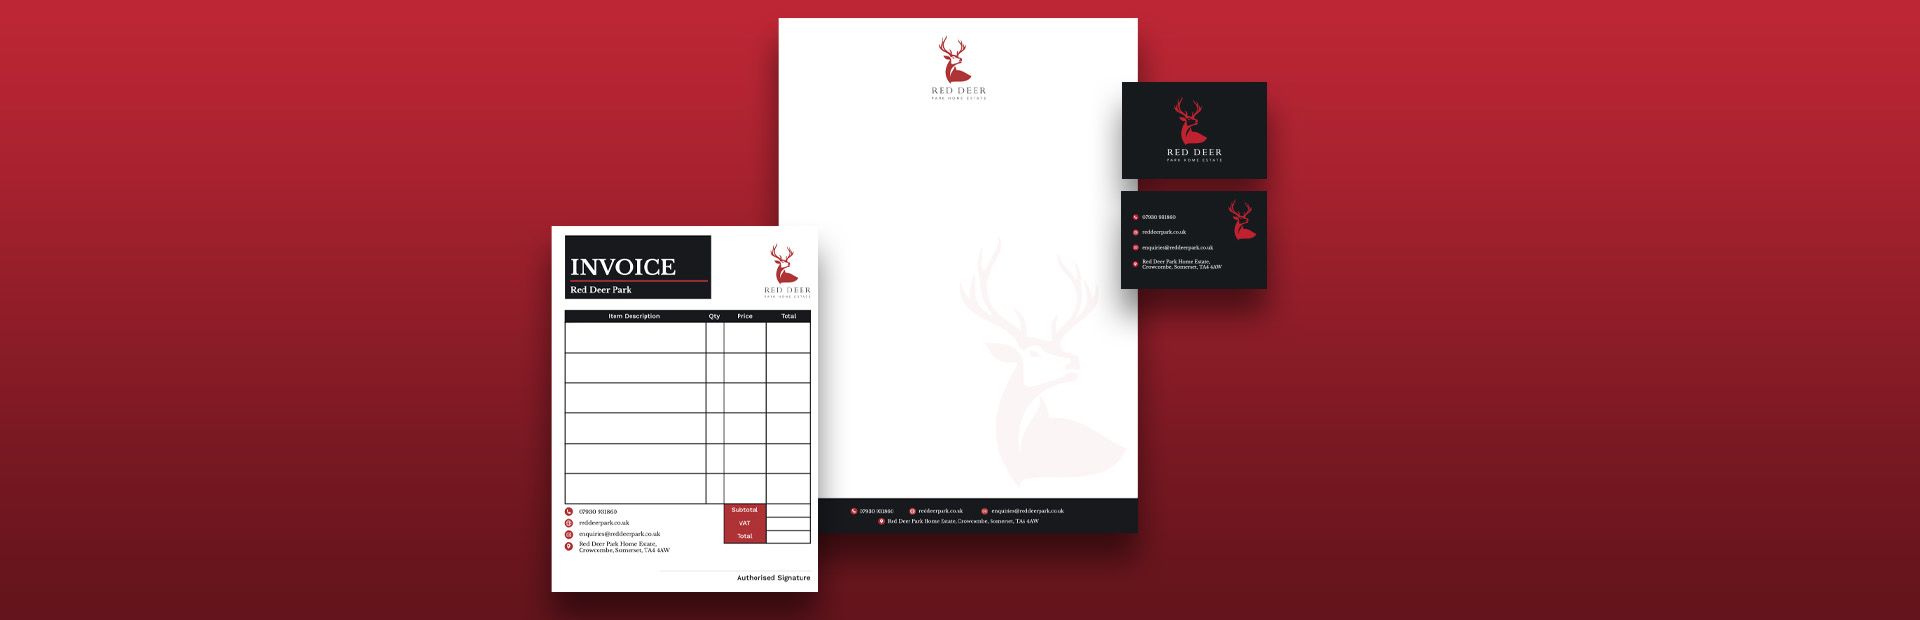 Red deer park stationery design 